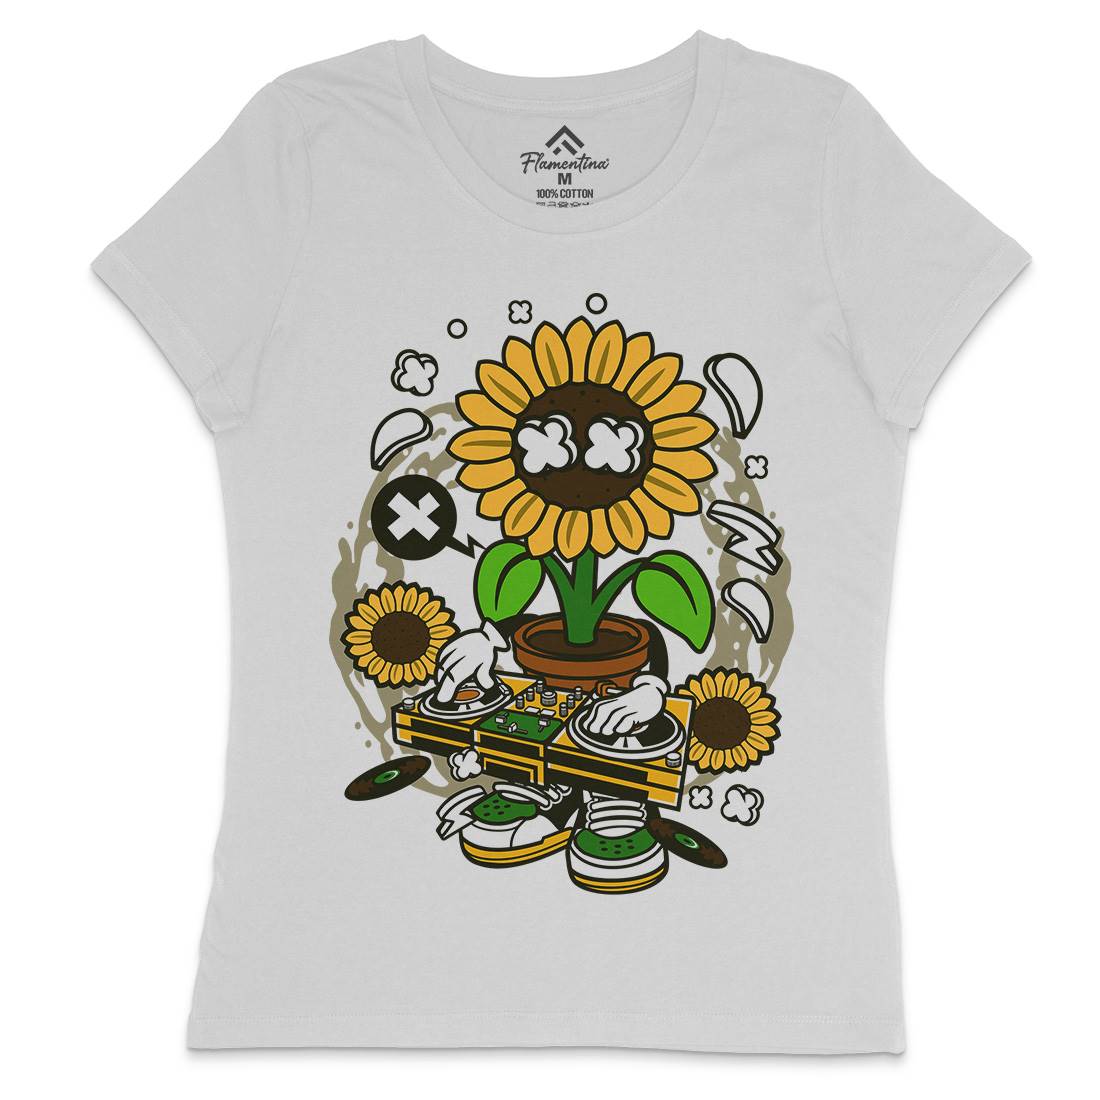 Sunflower Dj Womens Crew Neck T-Shirt Music C669